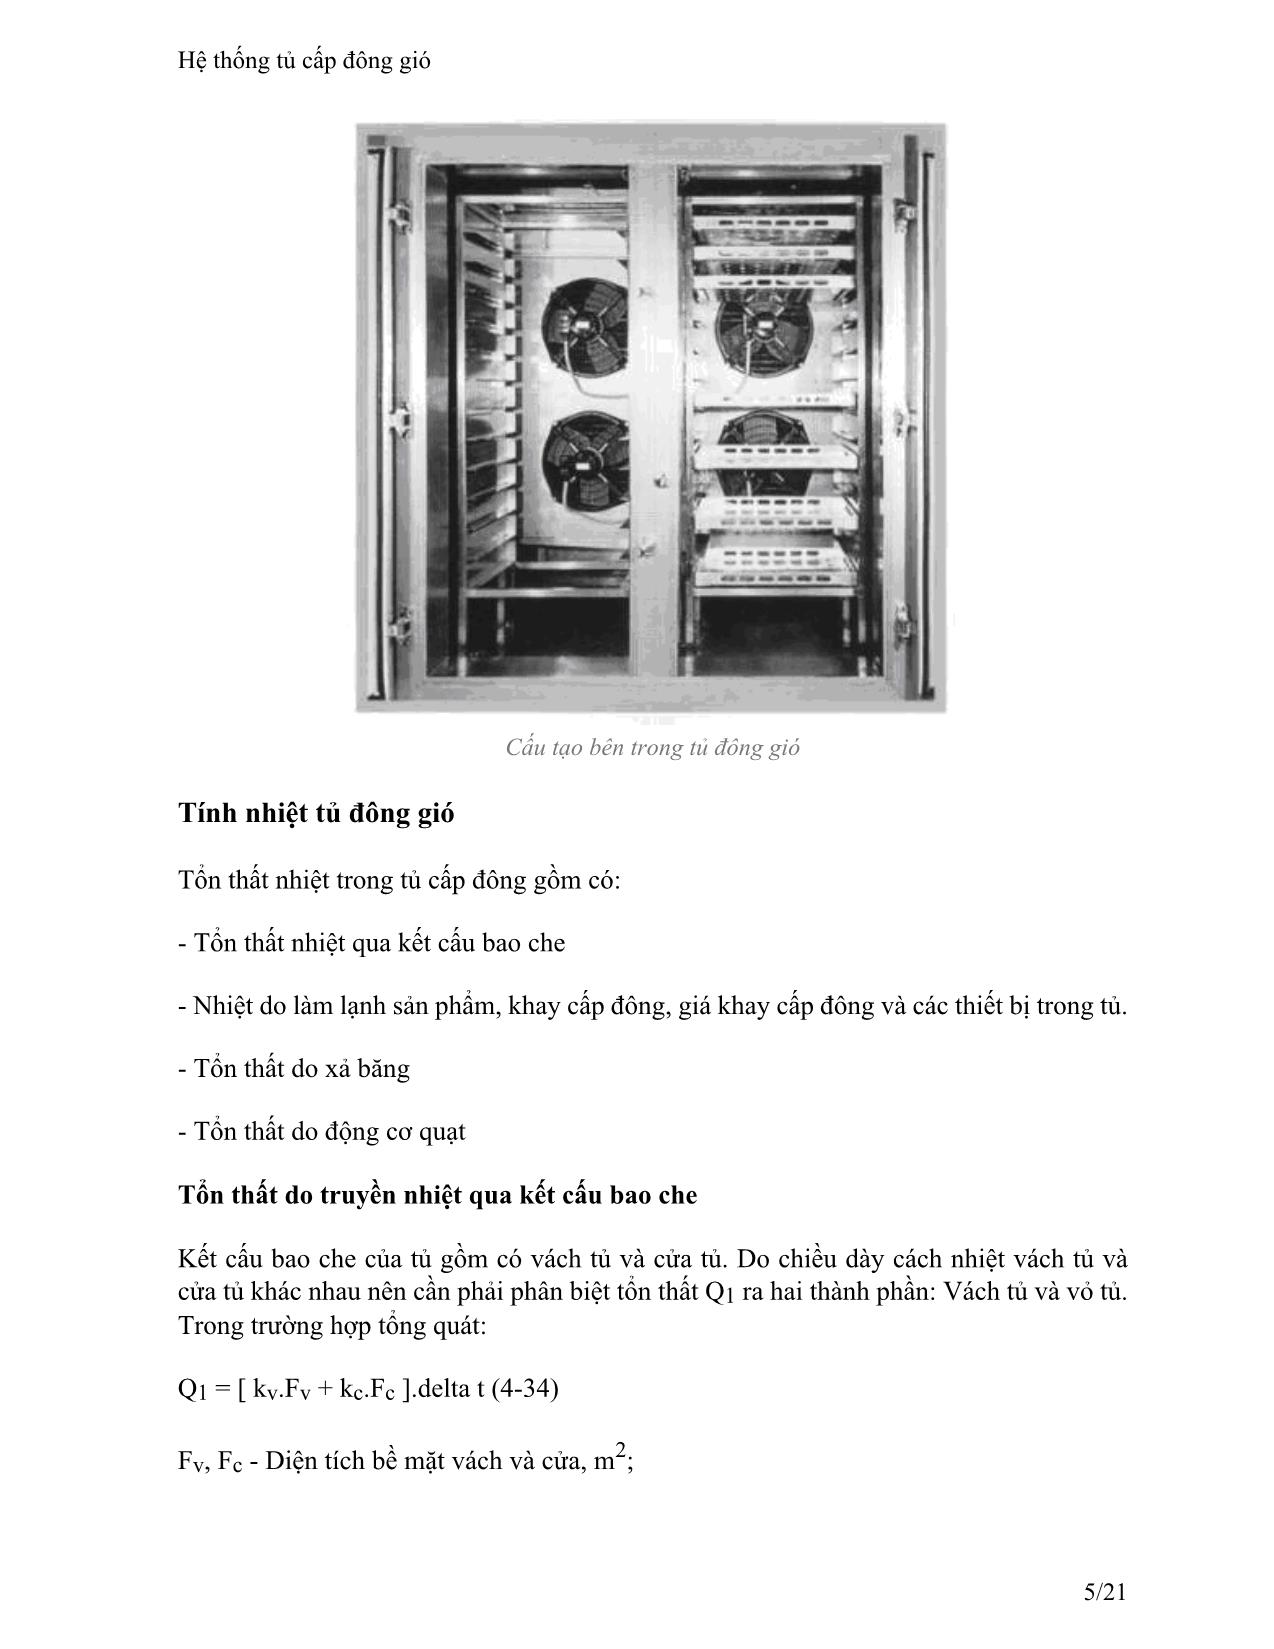 Giáo trình Hệ thống tủ cấp đông gió trang 5